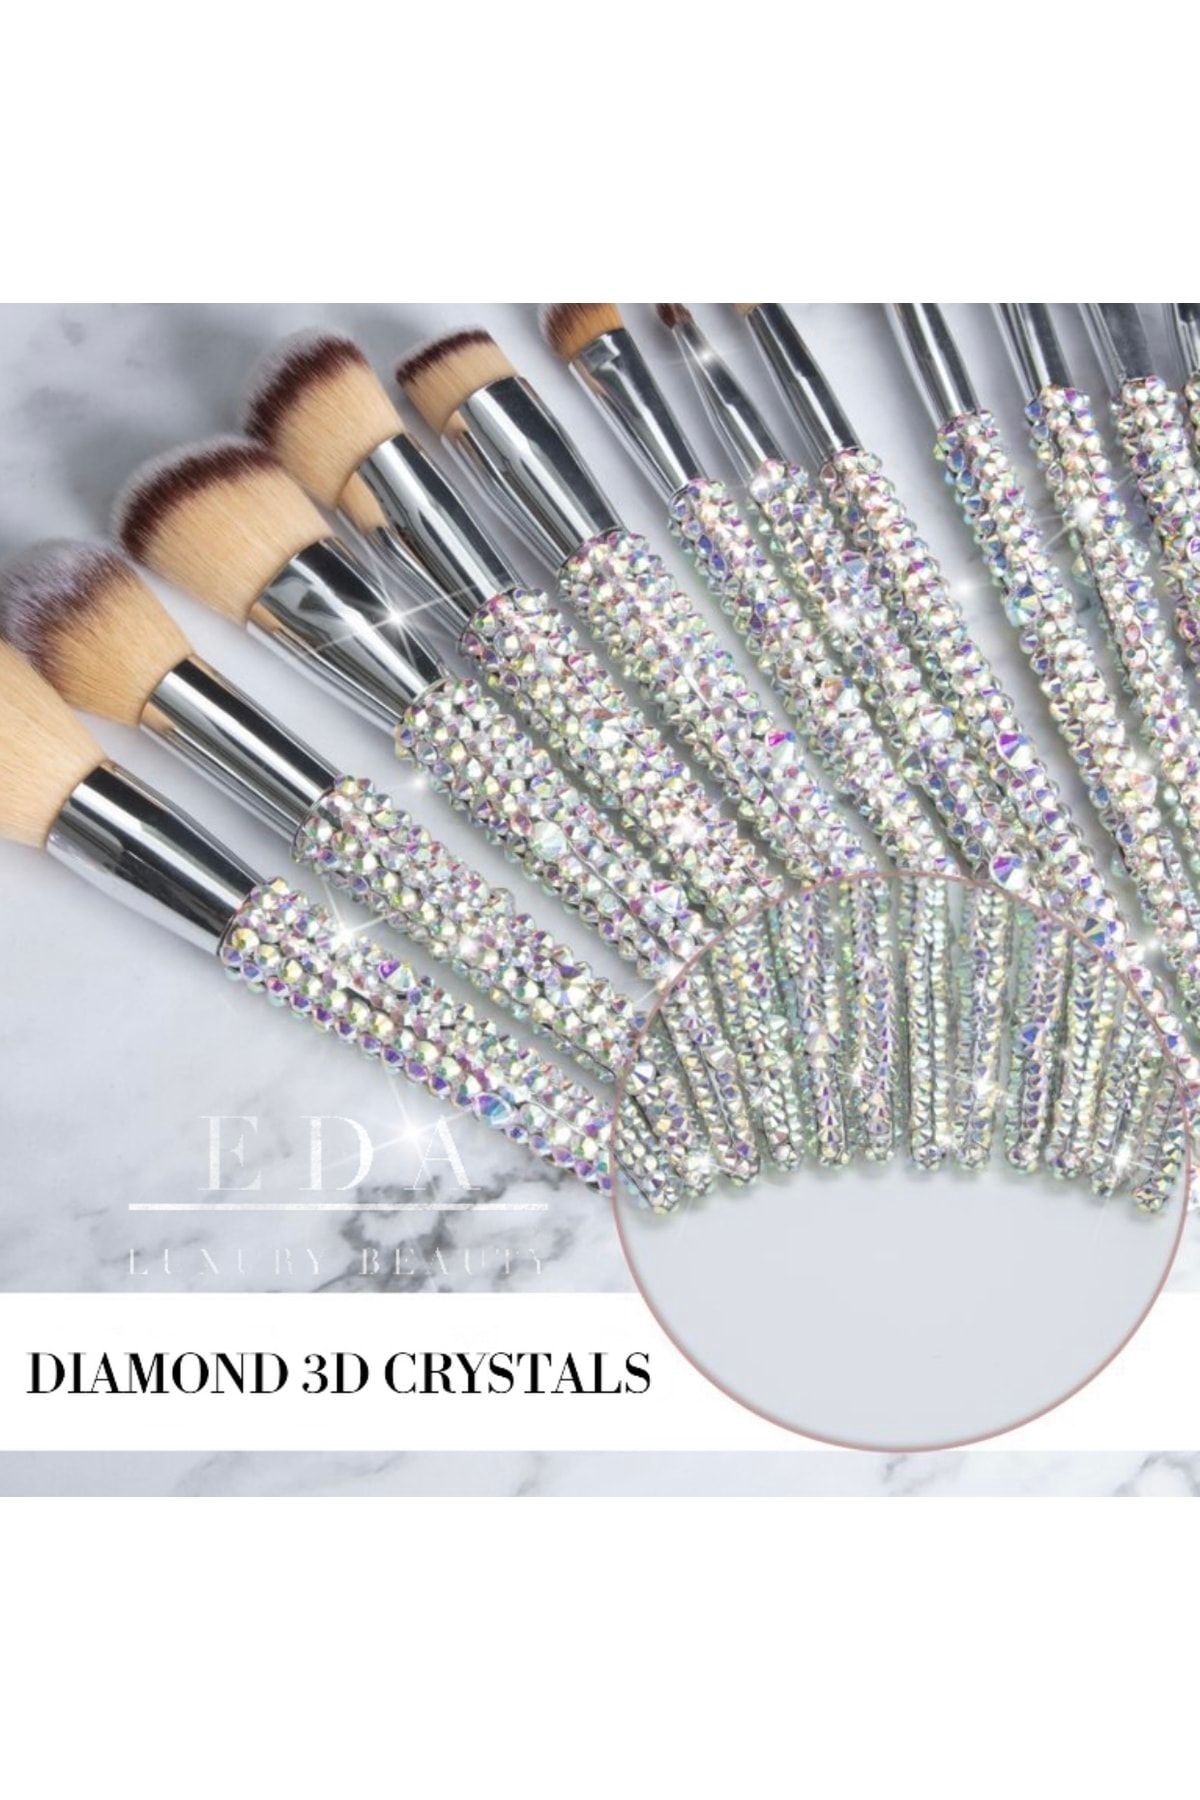 EDA LUXURY BEAUTY 12'li Diamond Özel Gümüş Kristal Taşlı Büyük Yüz & Göz Farı Makyaj Fırçası Seti Pro Makeup Brushes